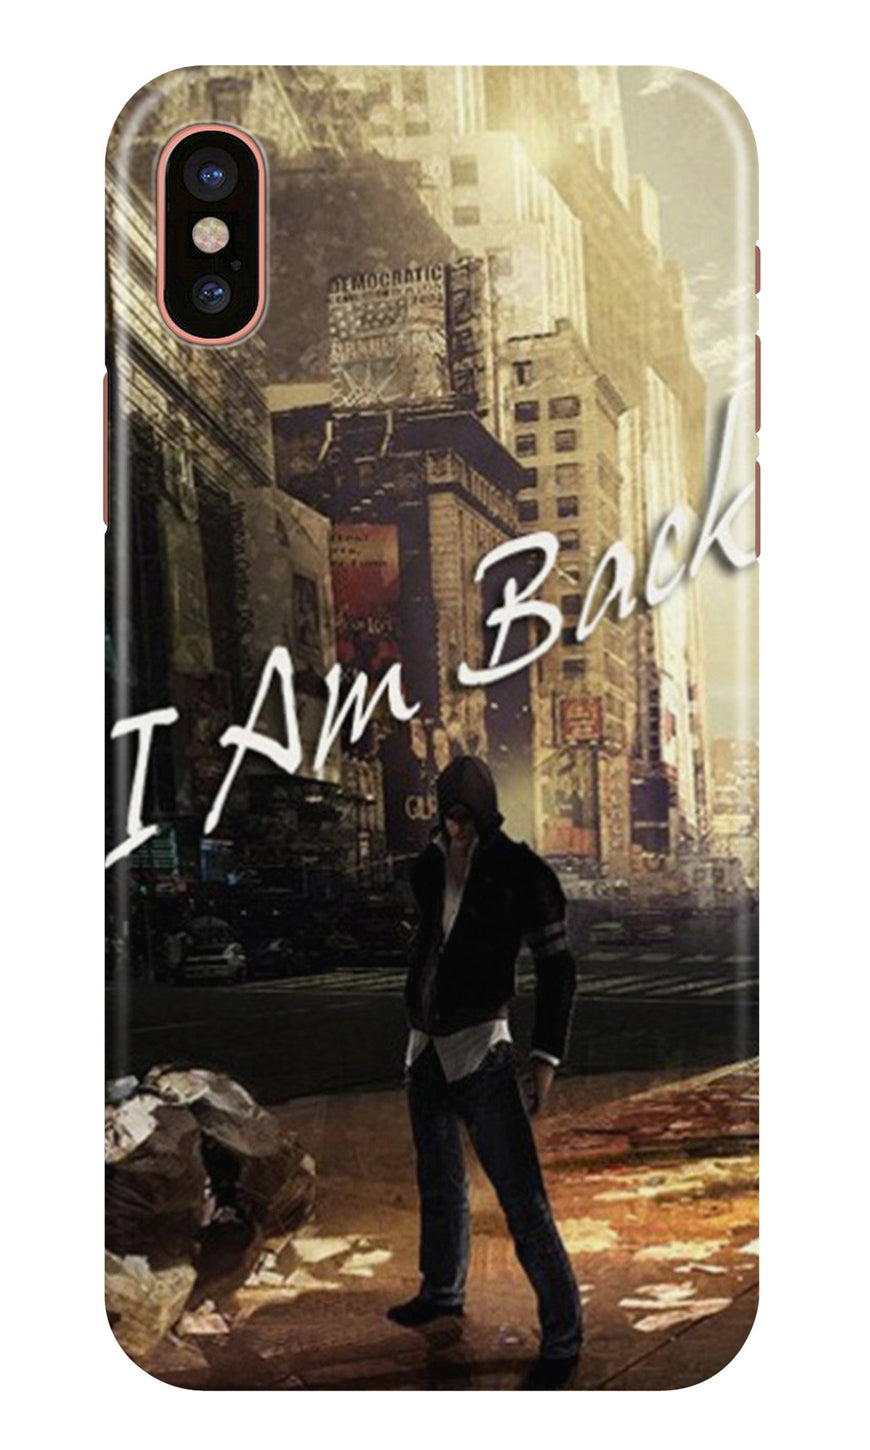 I am Back Case for iPhone Xr (Design No. 296)